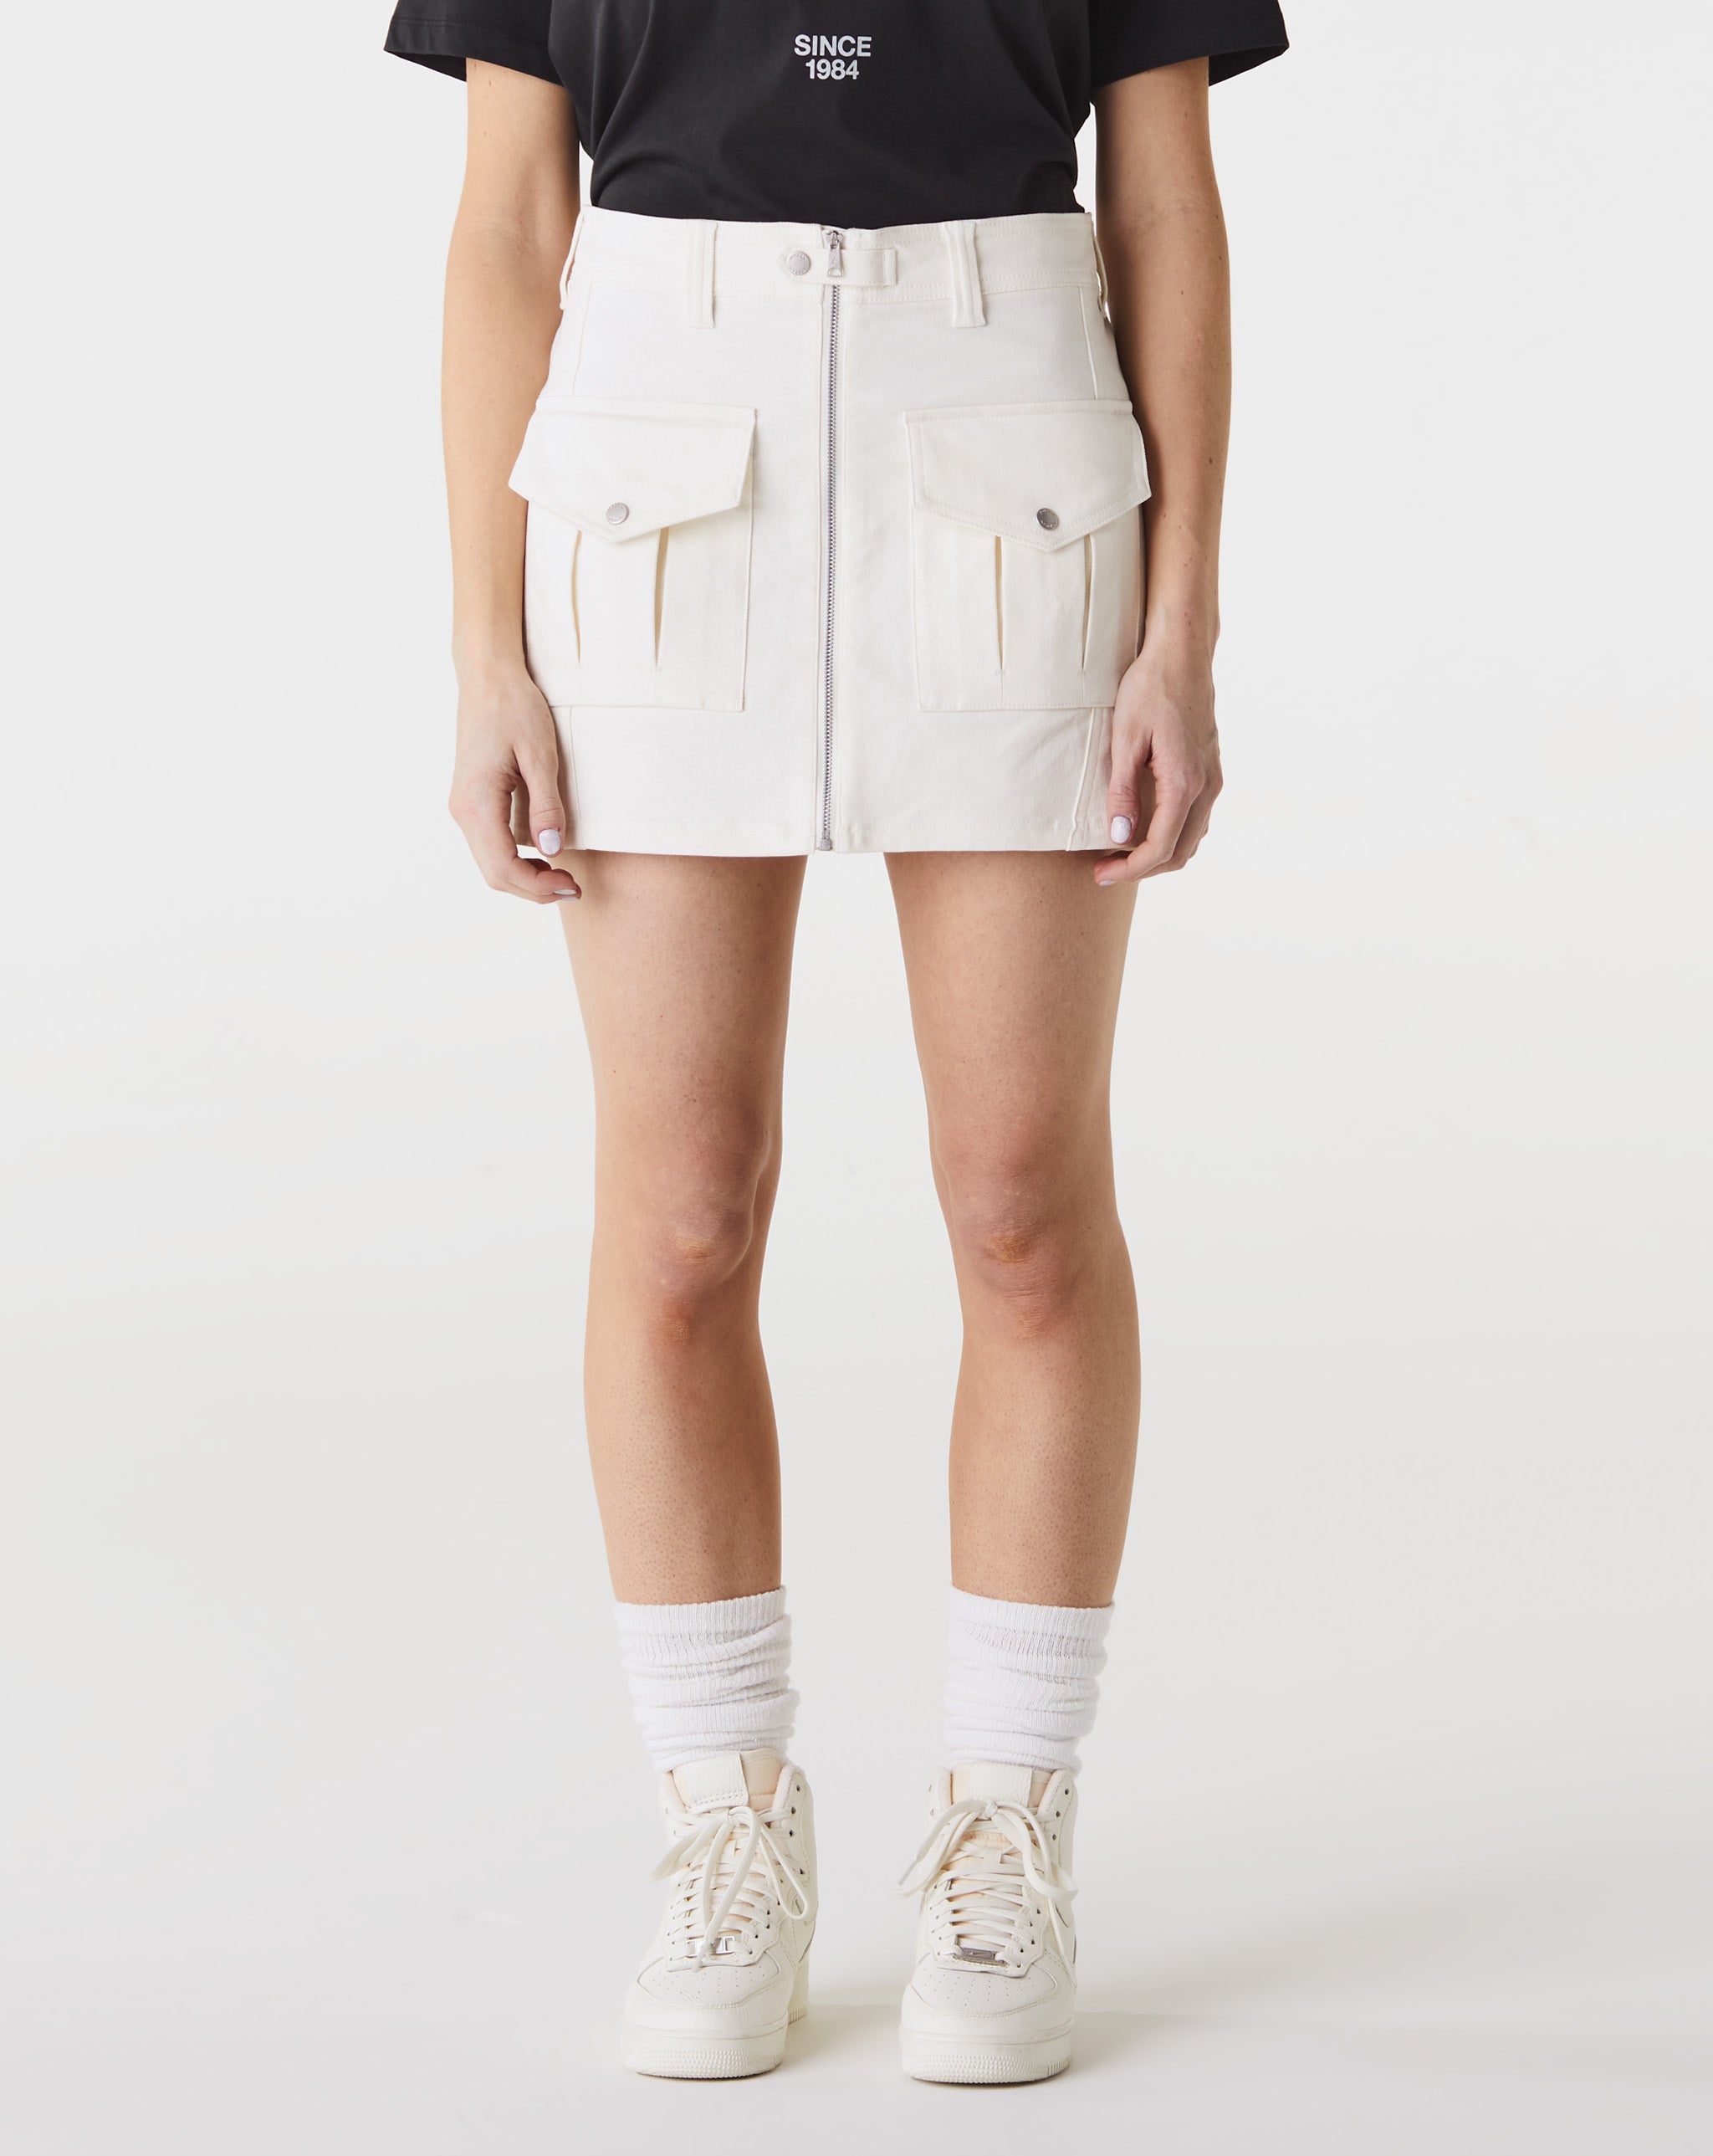 Air Jordan Women's Utility Skirt  - Cheap Urlfreeze Jordan outlet